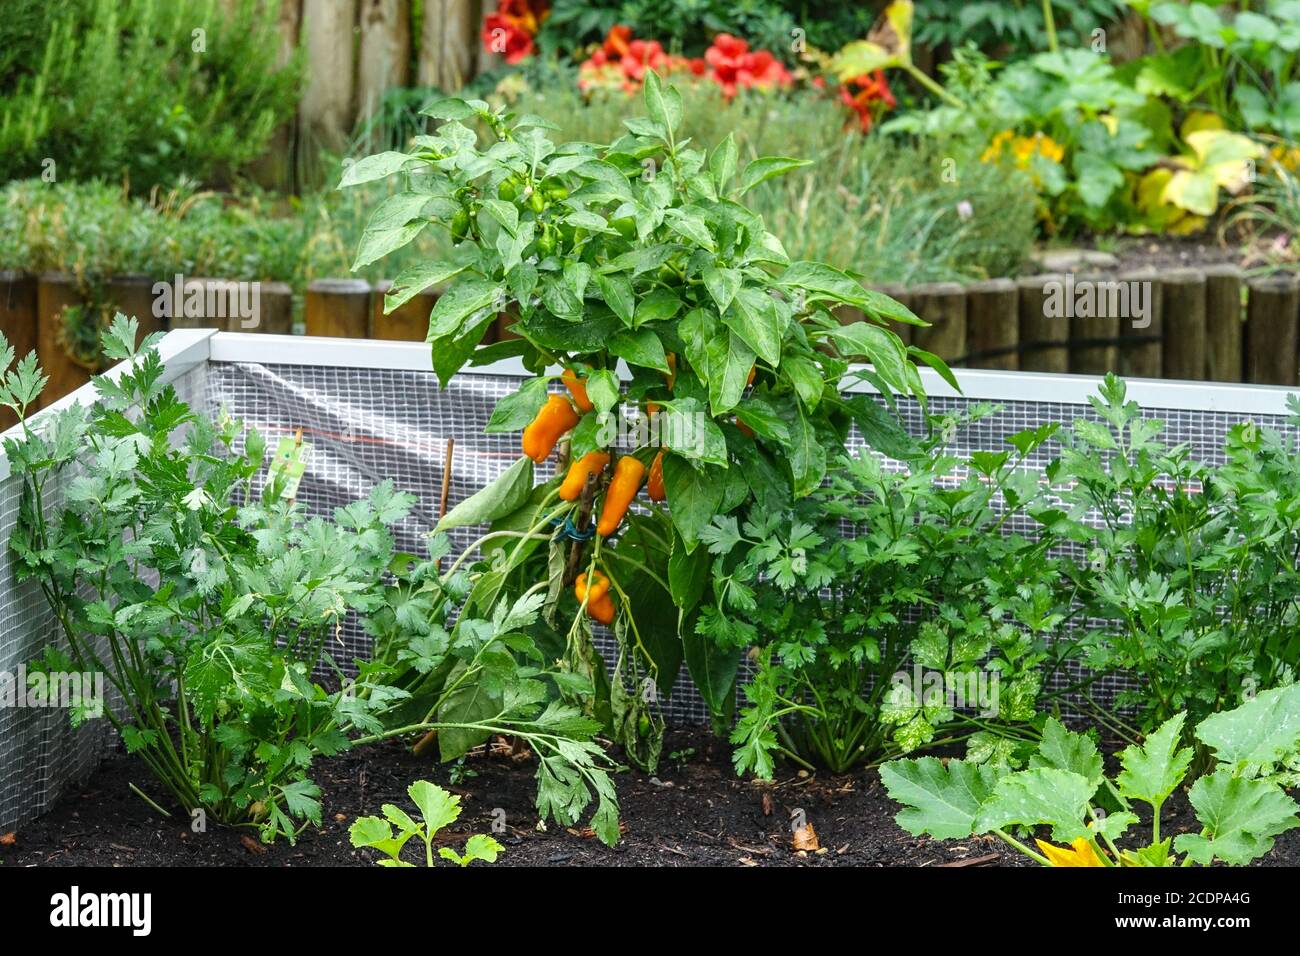 Jardin de lit surélevé, plantes potagères poussant dans le jardin de lotissement, poivrons dans la parcelle de légumes cultivant des légumes août Banque D'Images